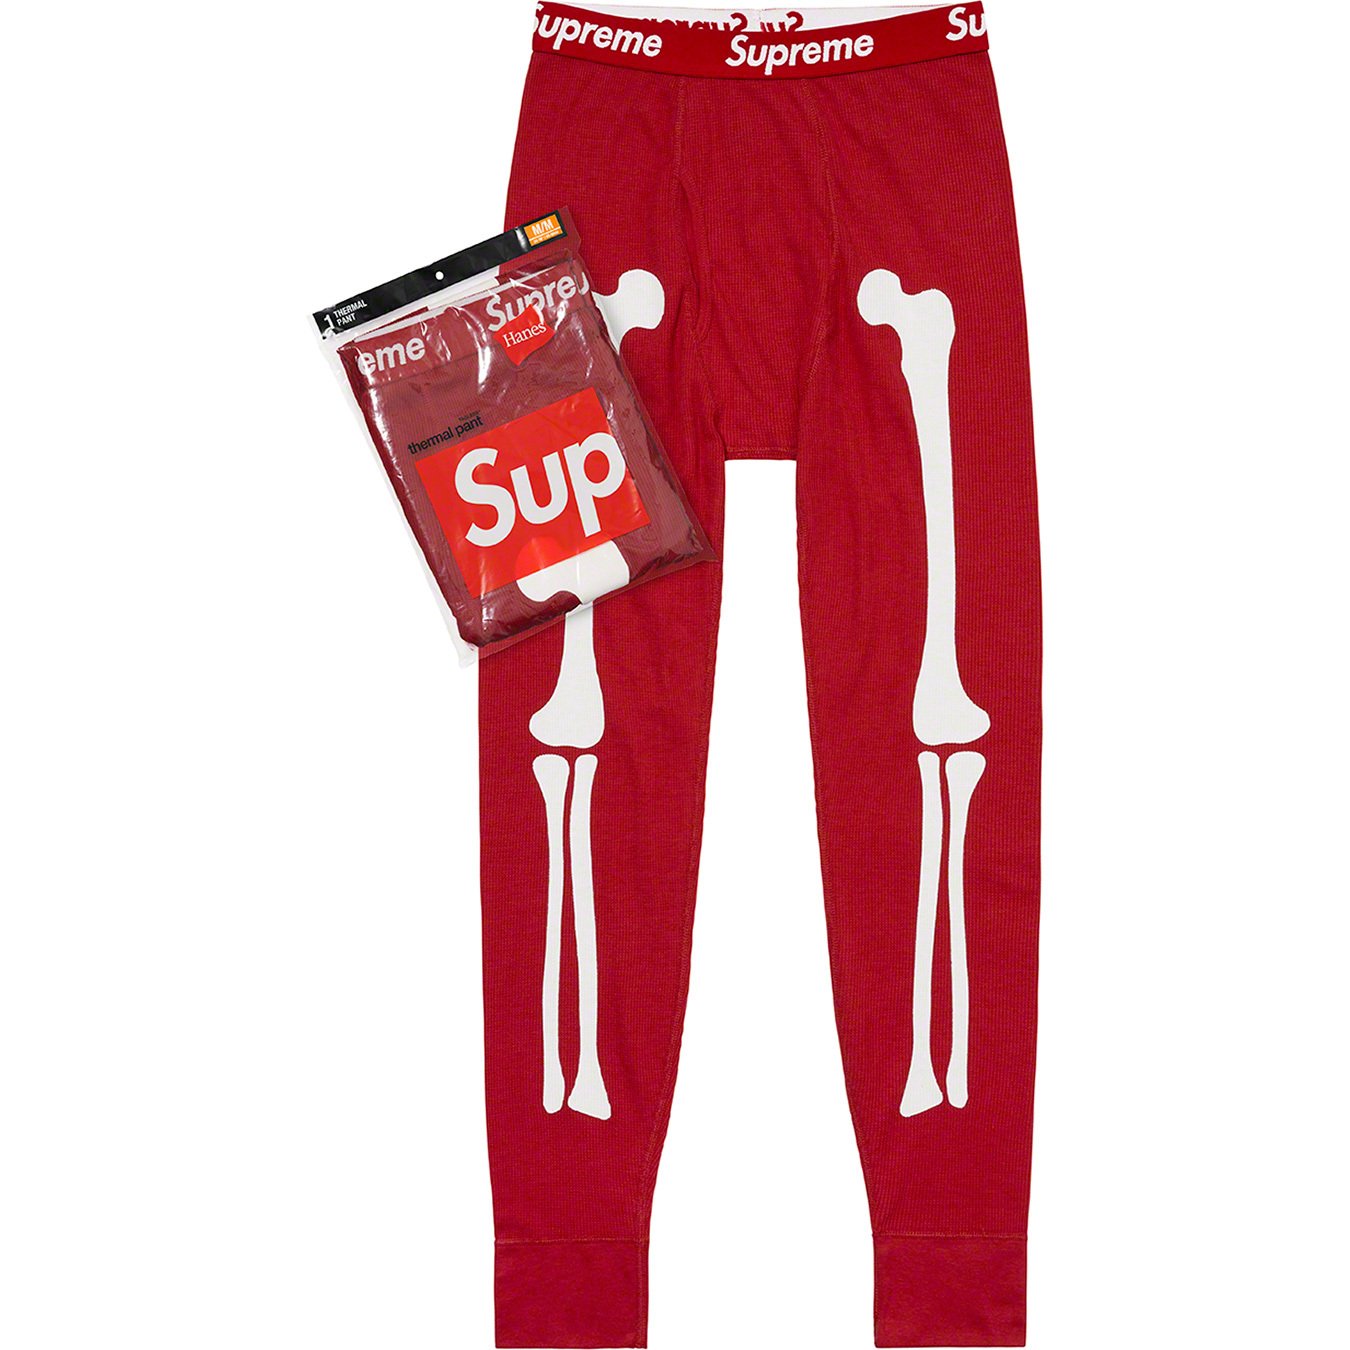 Supreme®/Hanes® Bones Thermal Pant (1 Pack) - Supreme Community